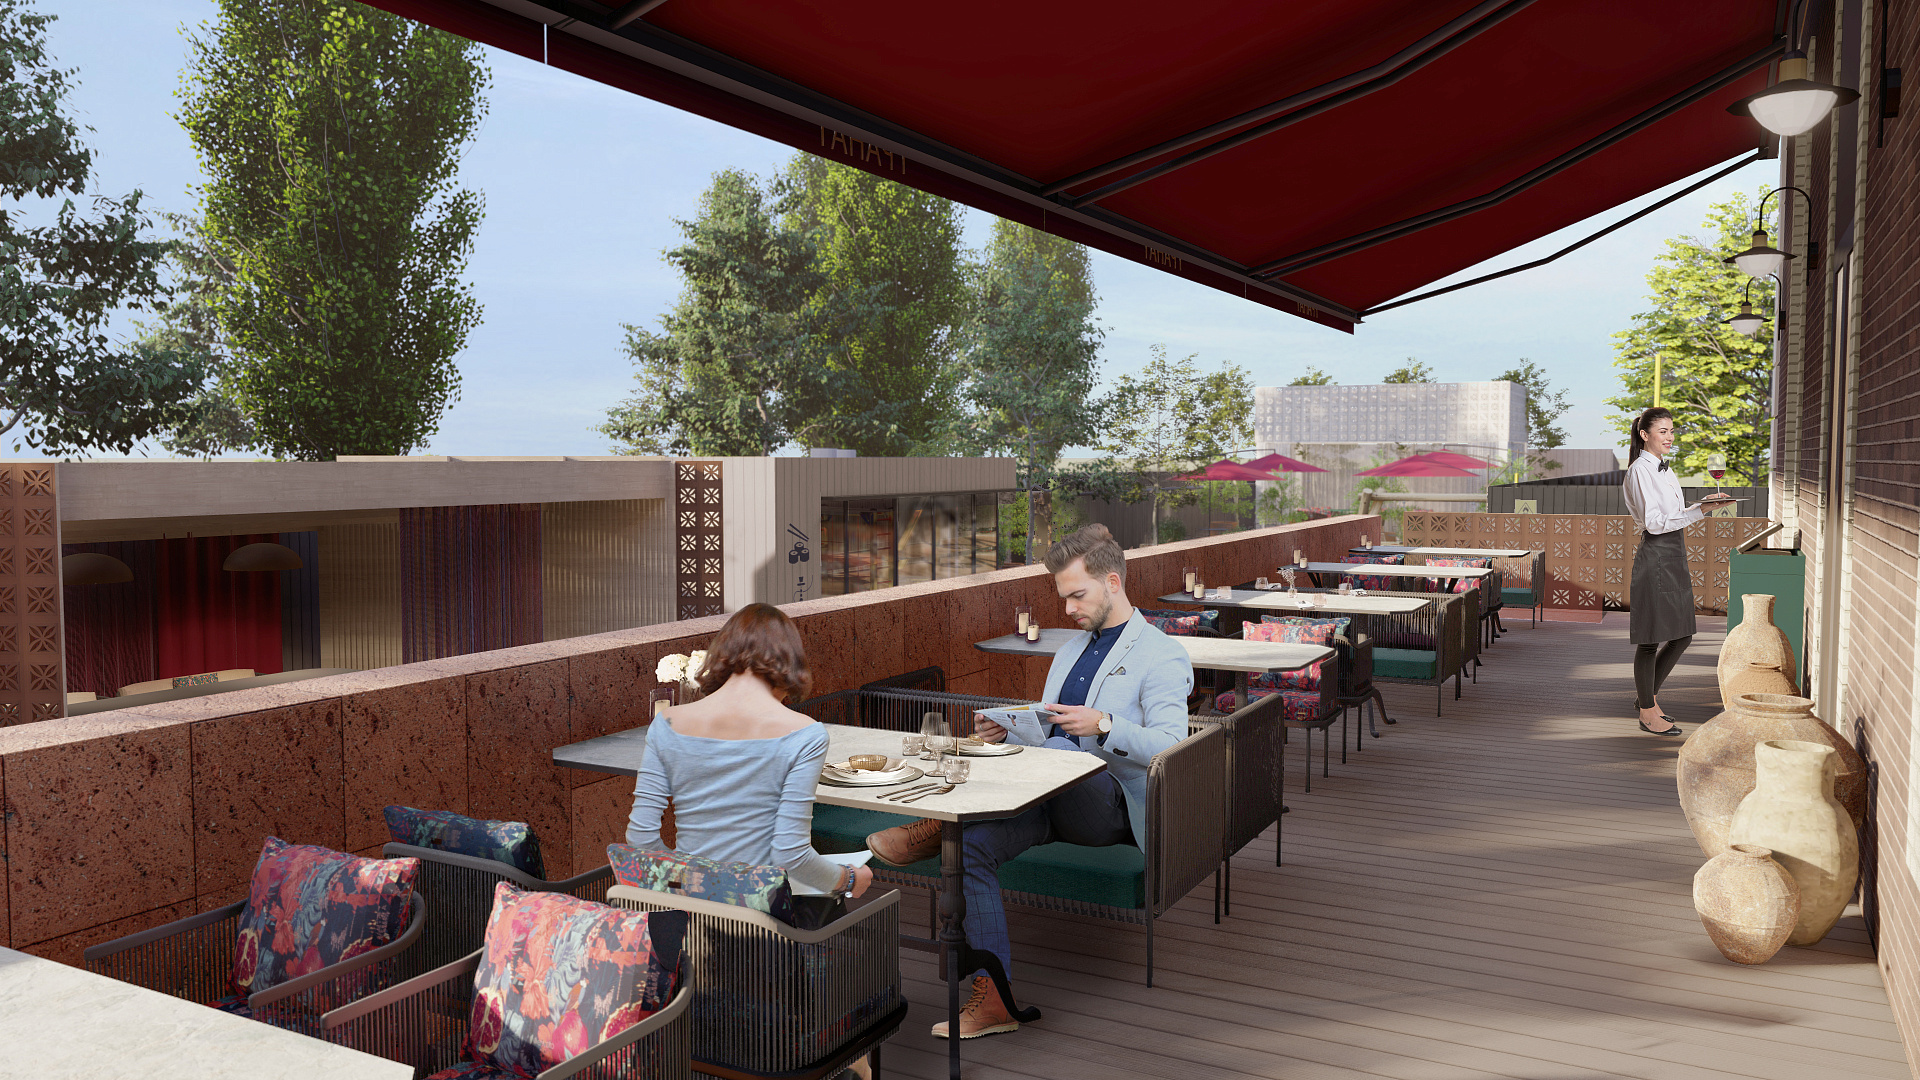 GRANAT Restaurant Landscape Concept by PROJECT architectural bureau